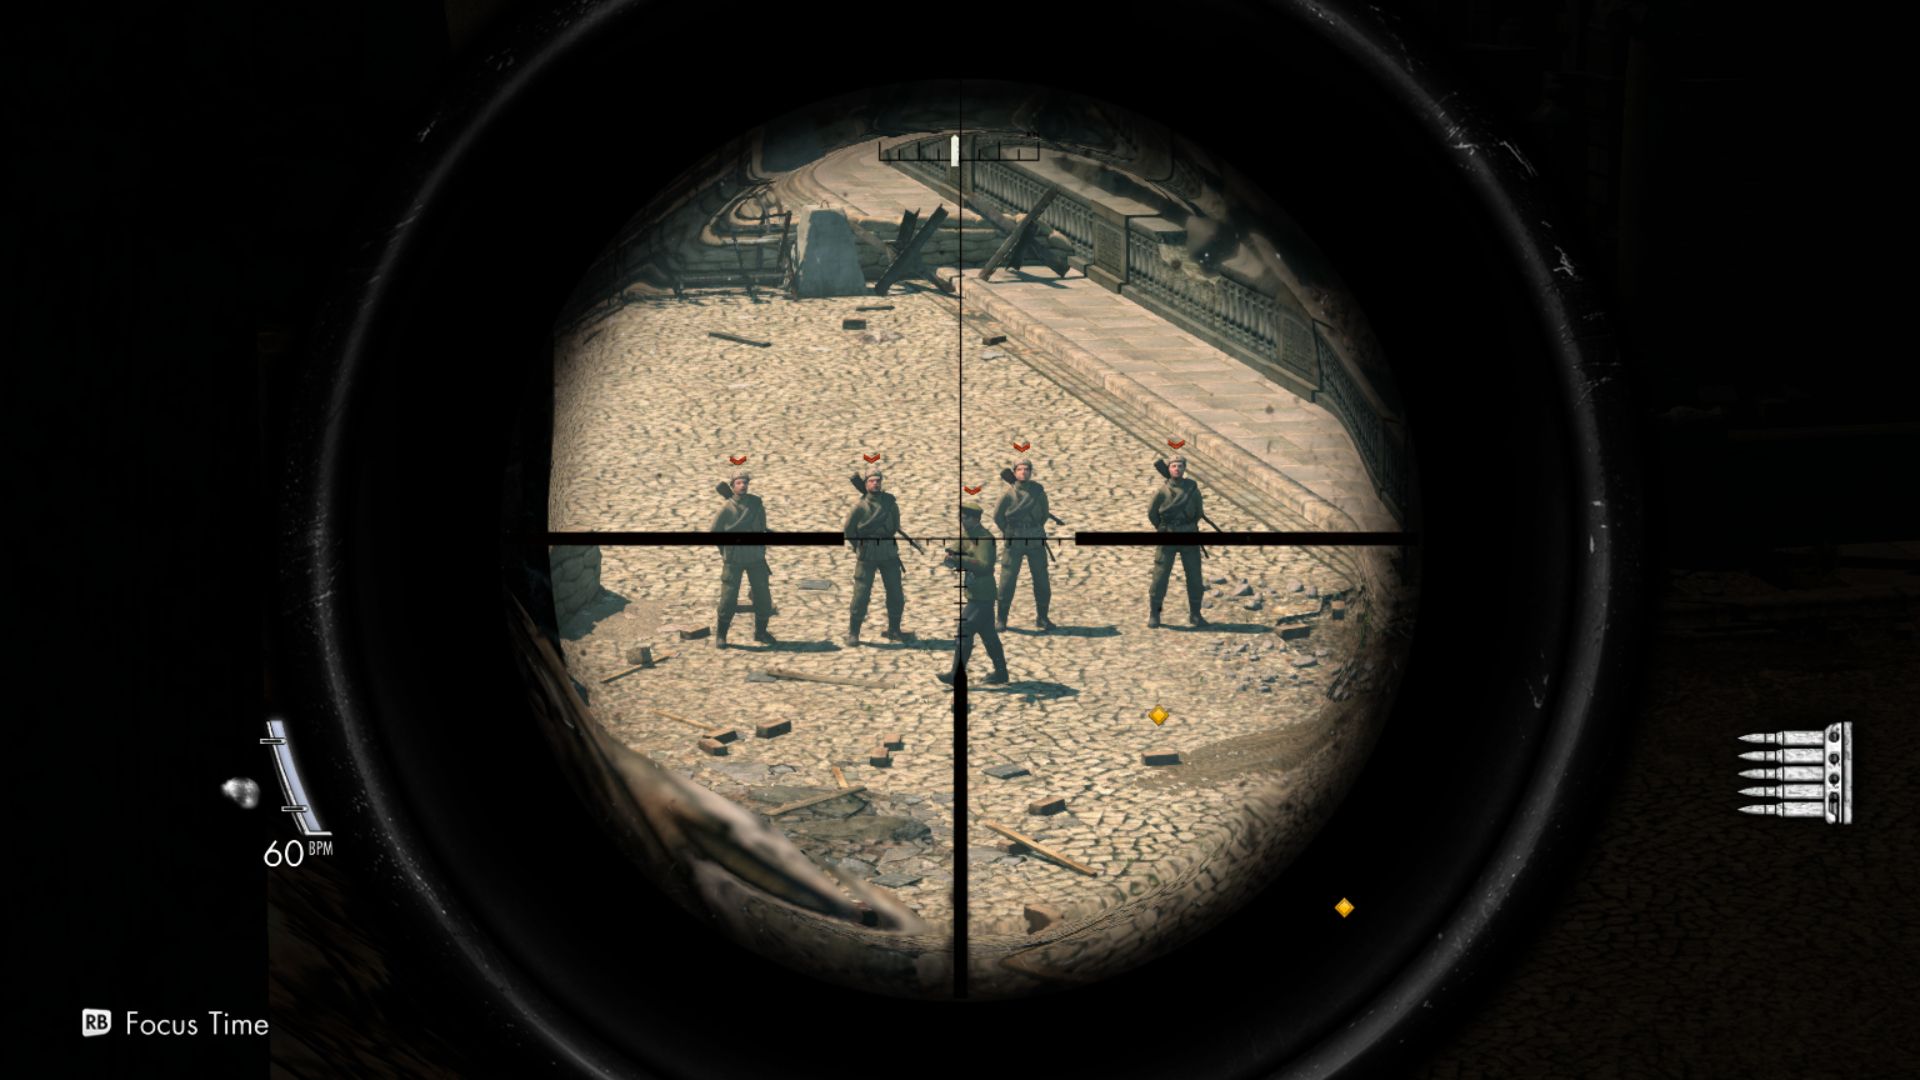 sniper elite 3 crashes after rebellion logo